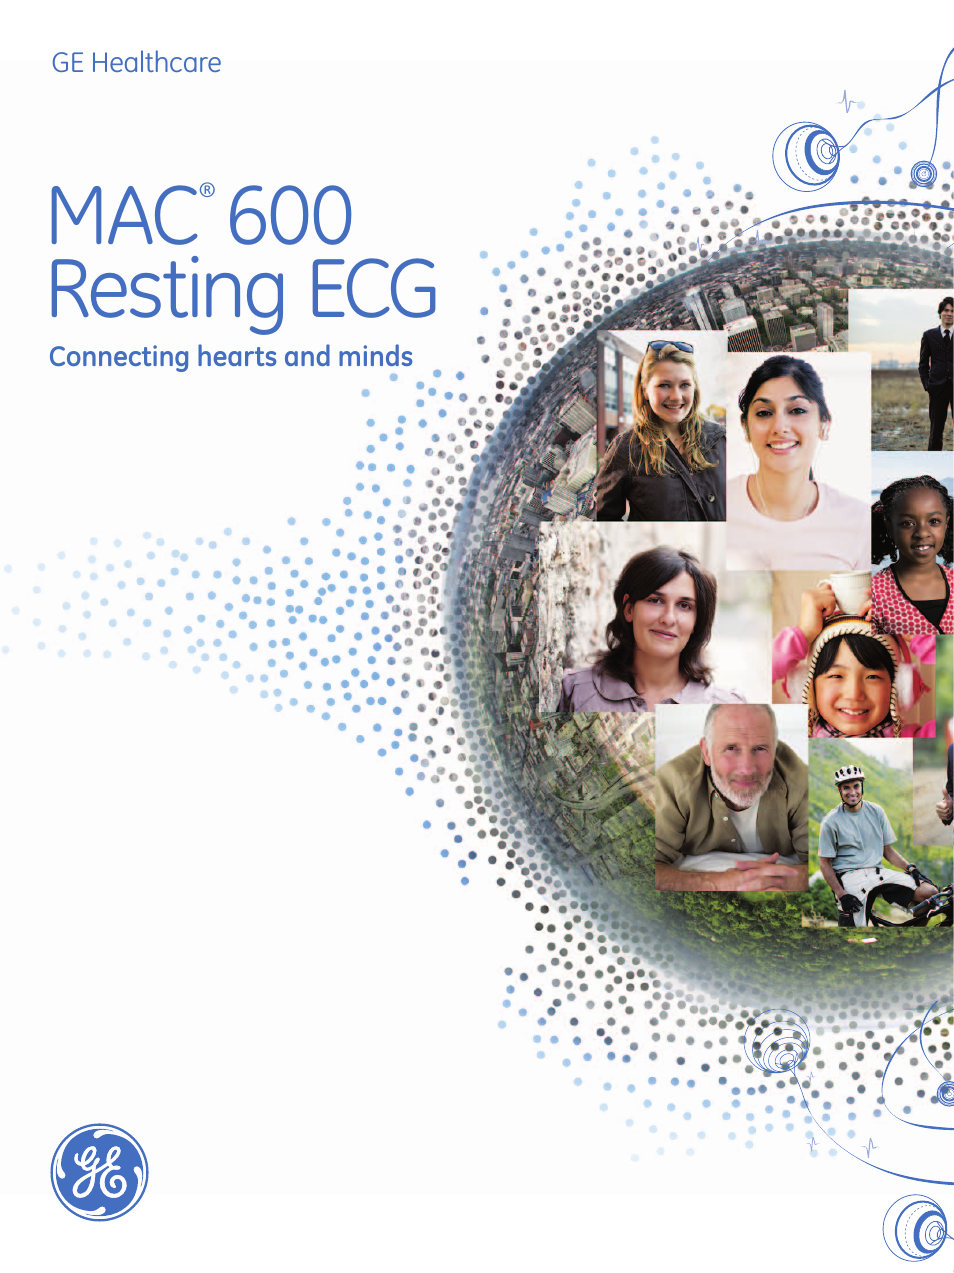 MAC 600 ECG